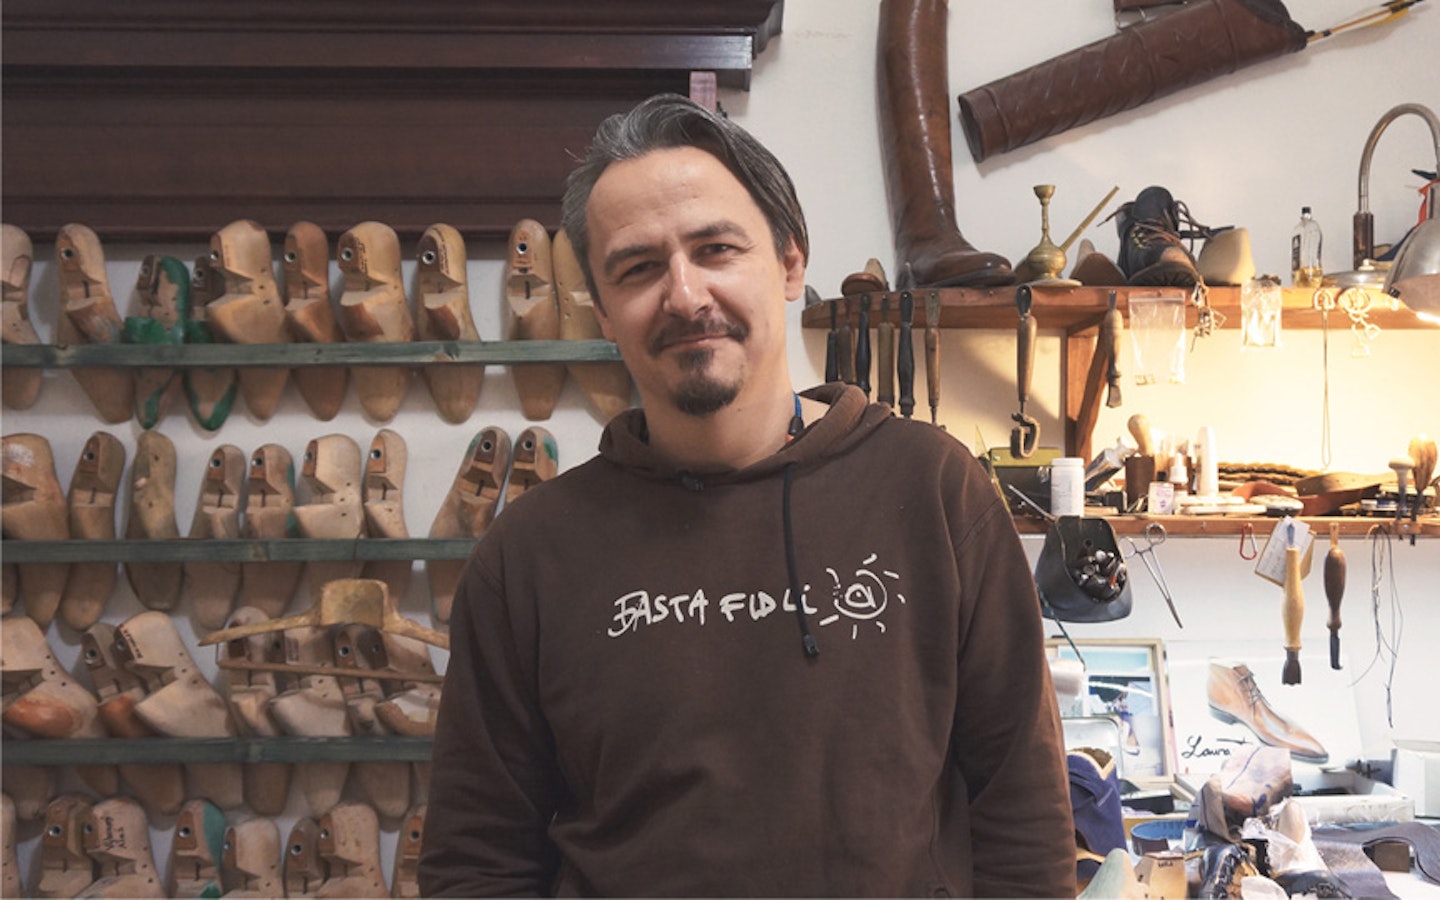 Learn bespoke shoemaking with Erik in Czech Republic.